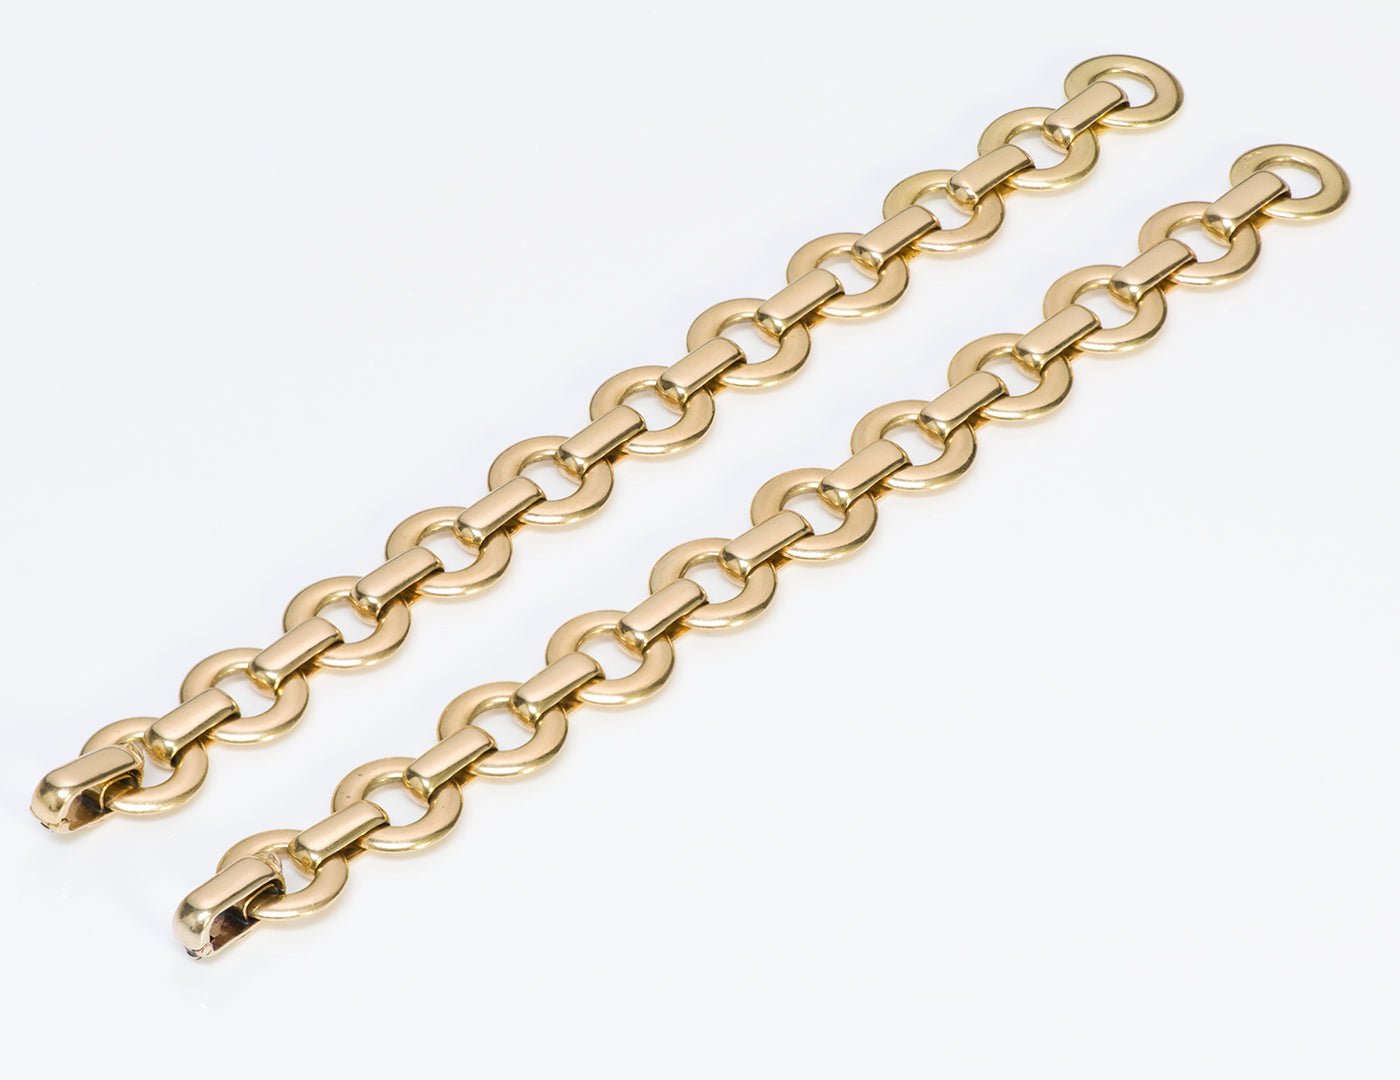 Cartier George L'Enfant 18K Gold Bracelets Necklace - DSF Antique Jewelry